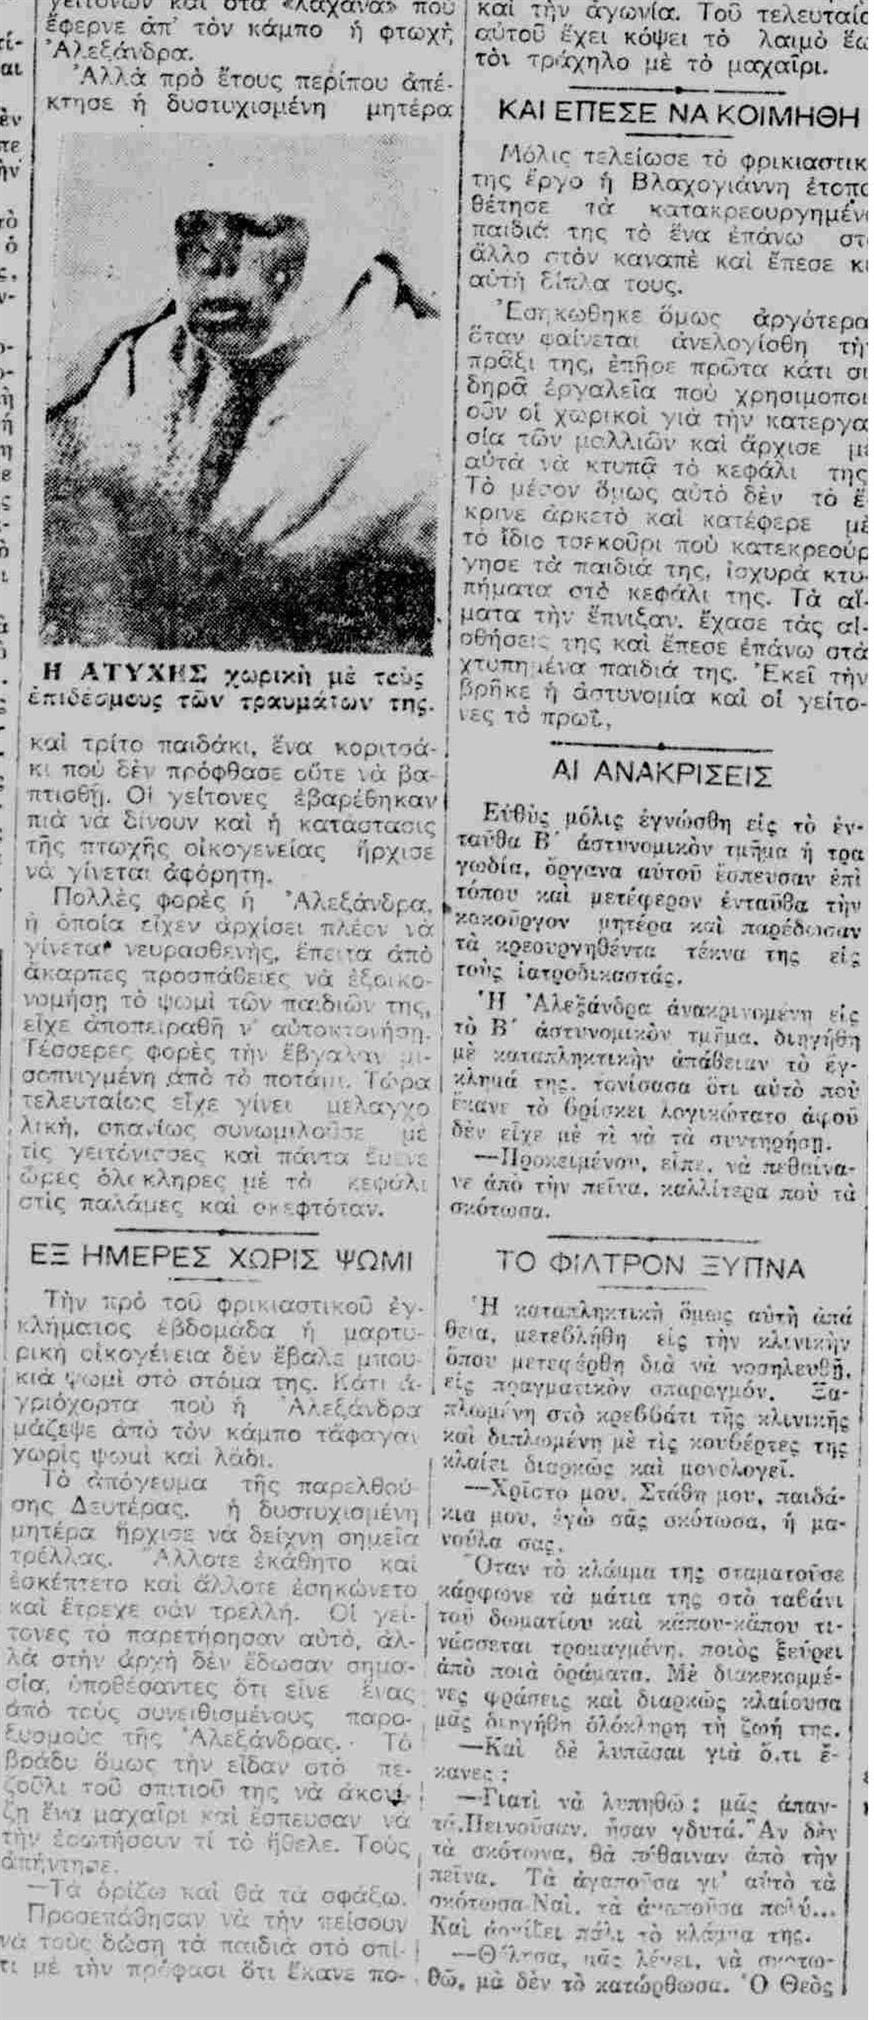 Δημοσίευμα από την εφημερίδα ΕΛΕΥΘΕΡΟΣ ΑΝΘΡΩΠΟΣ την Παρασκευή 27 Ιανουαρίου 1933